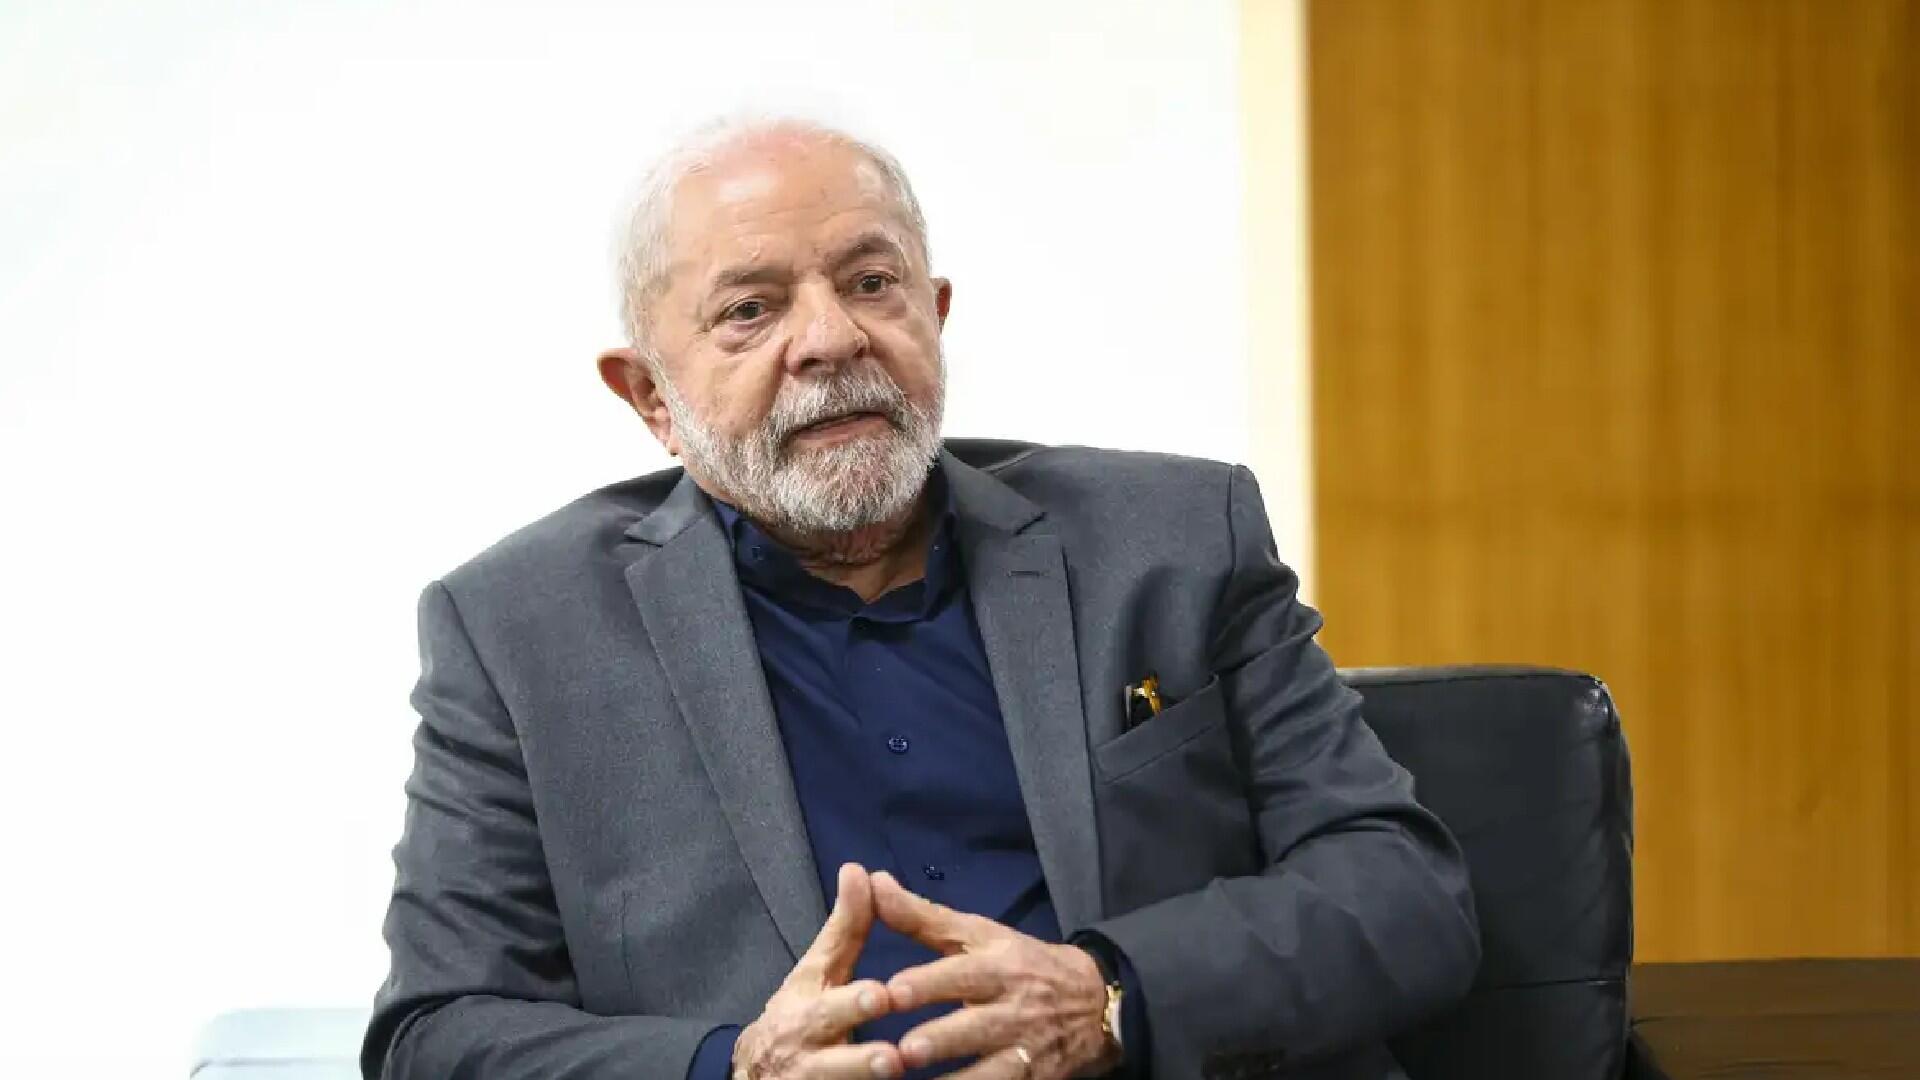 MILAGRE DA FÉ: Lula cita Deus e chama adversários de ‘lixo’ ao tentar atrair evangélicos